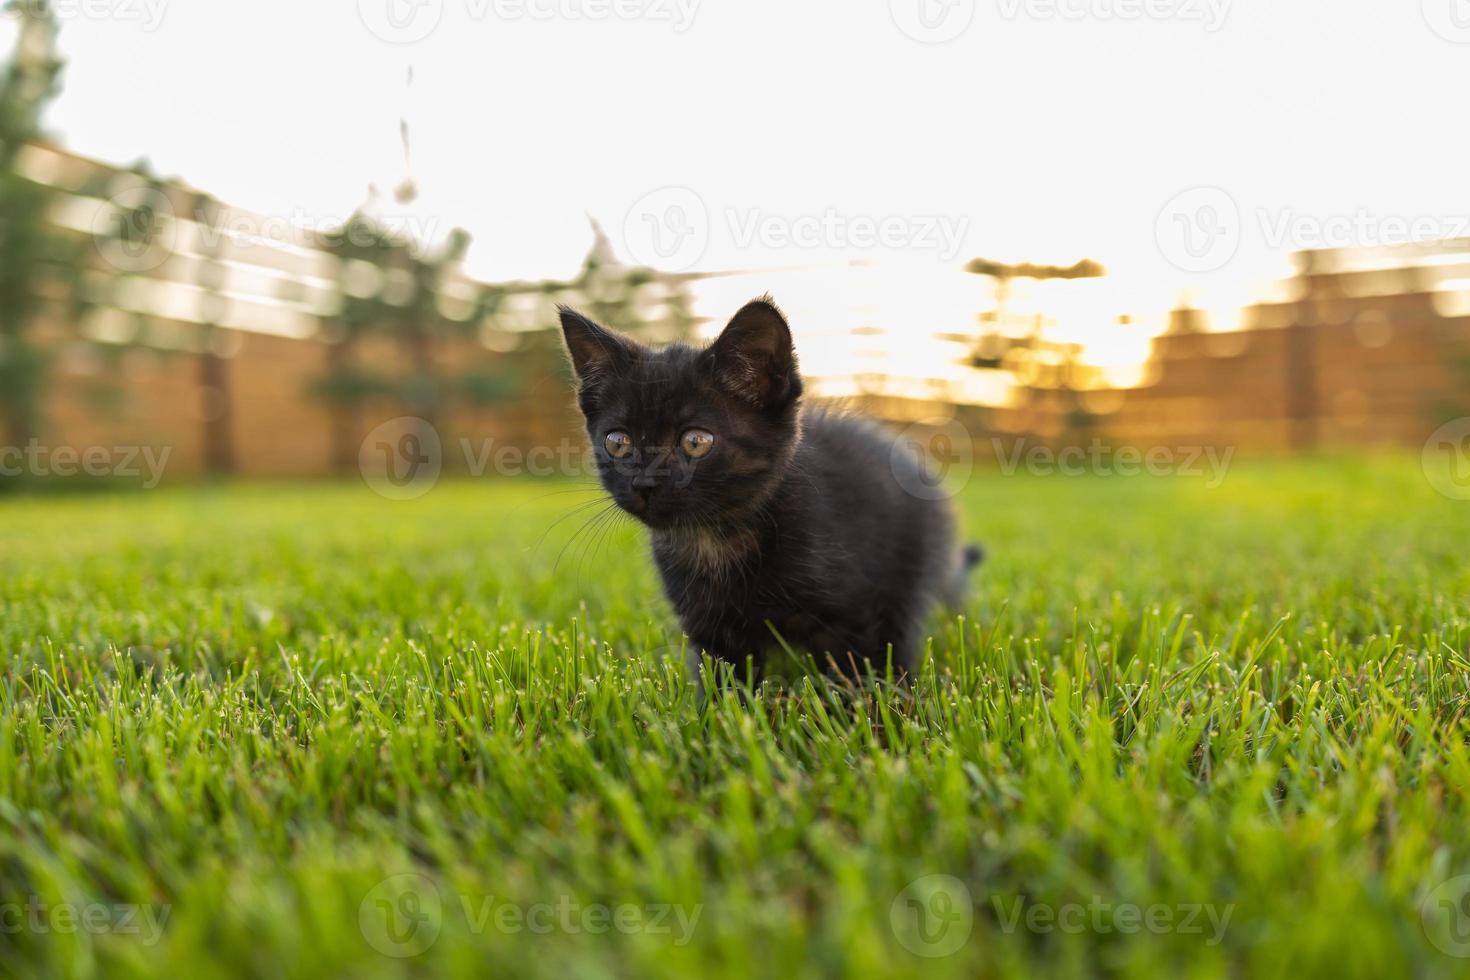 zwart merkwaardig katje buitenshuis in de gras - huisdier en huiselijk kat concept foto